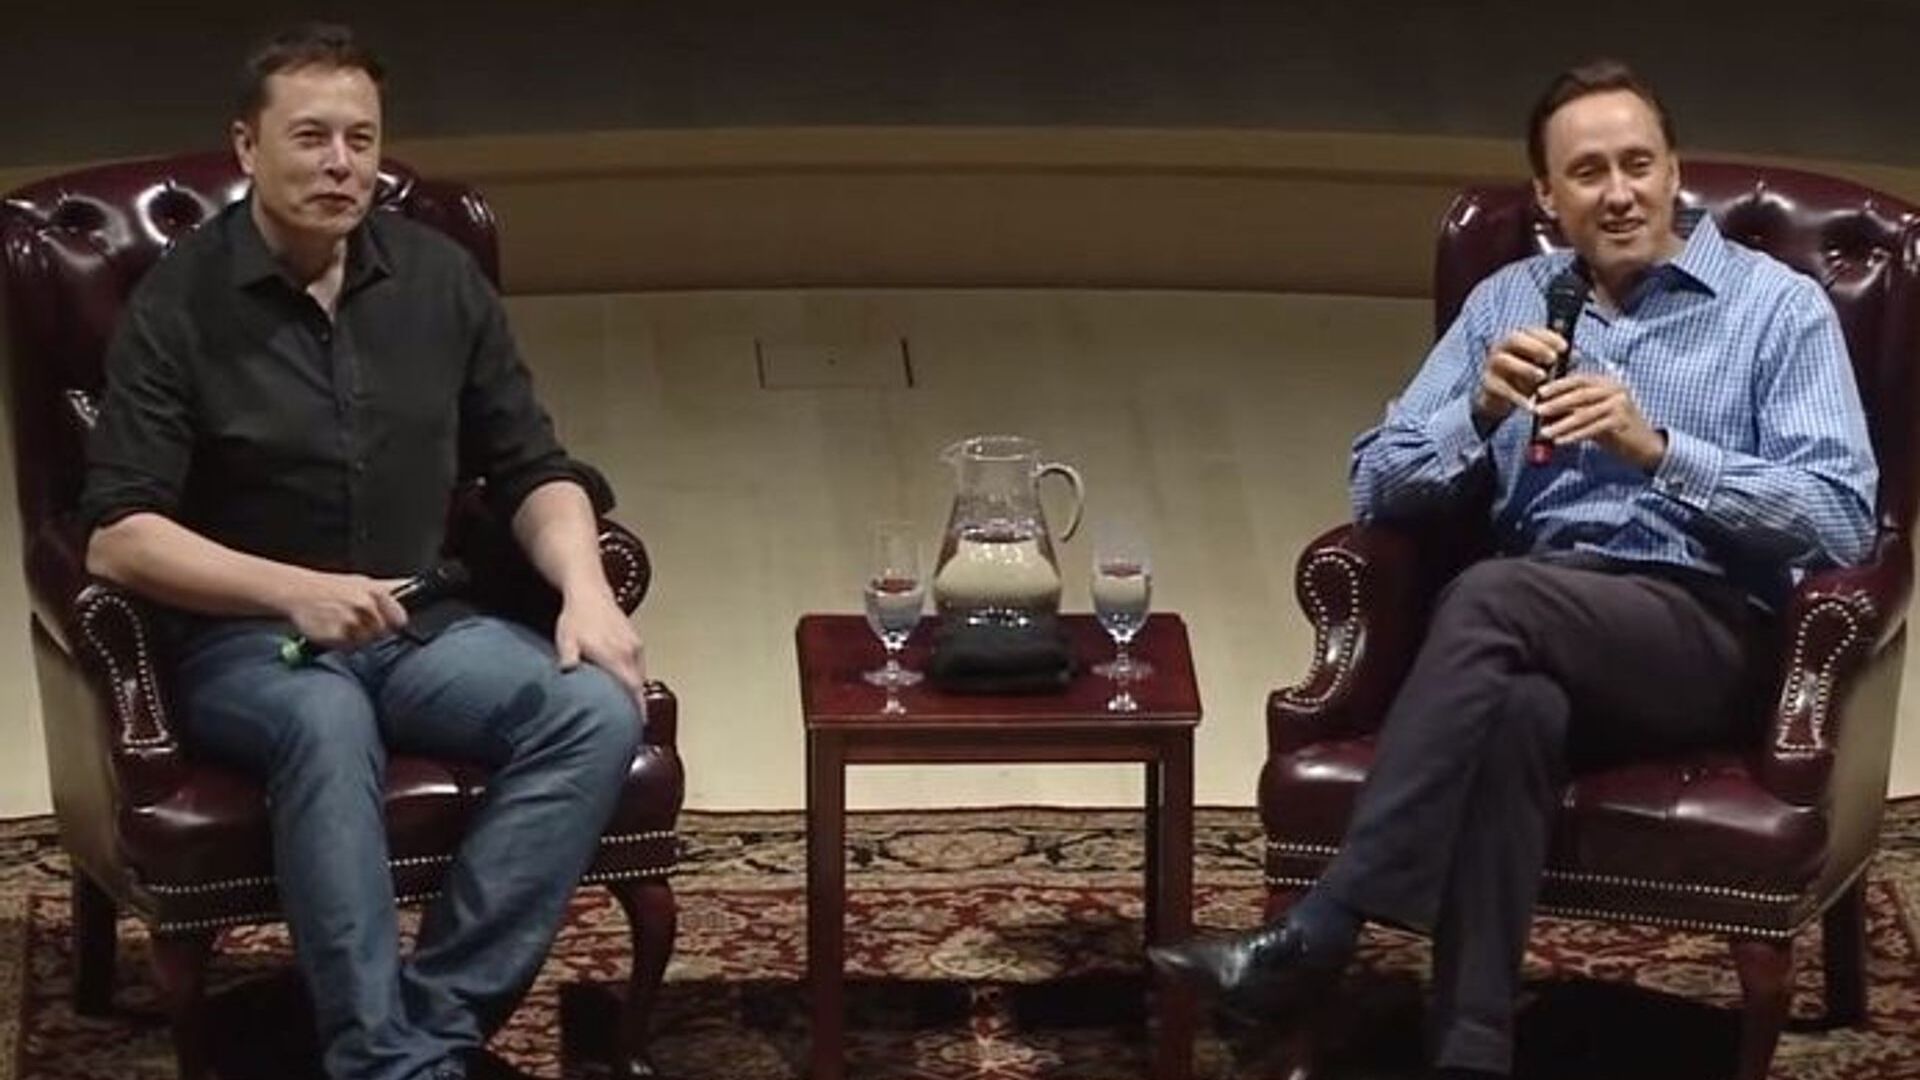 مکالمه بین کارآفرین رویایی ایلان ماسک و سرمایه گذار معروف استیو جوروتسون